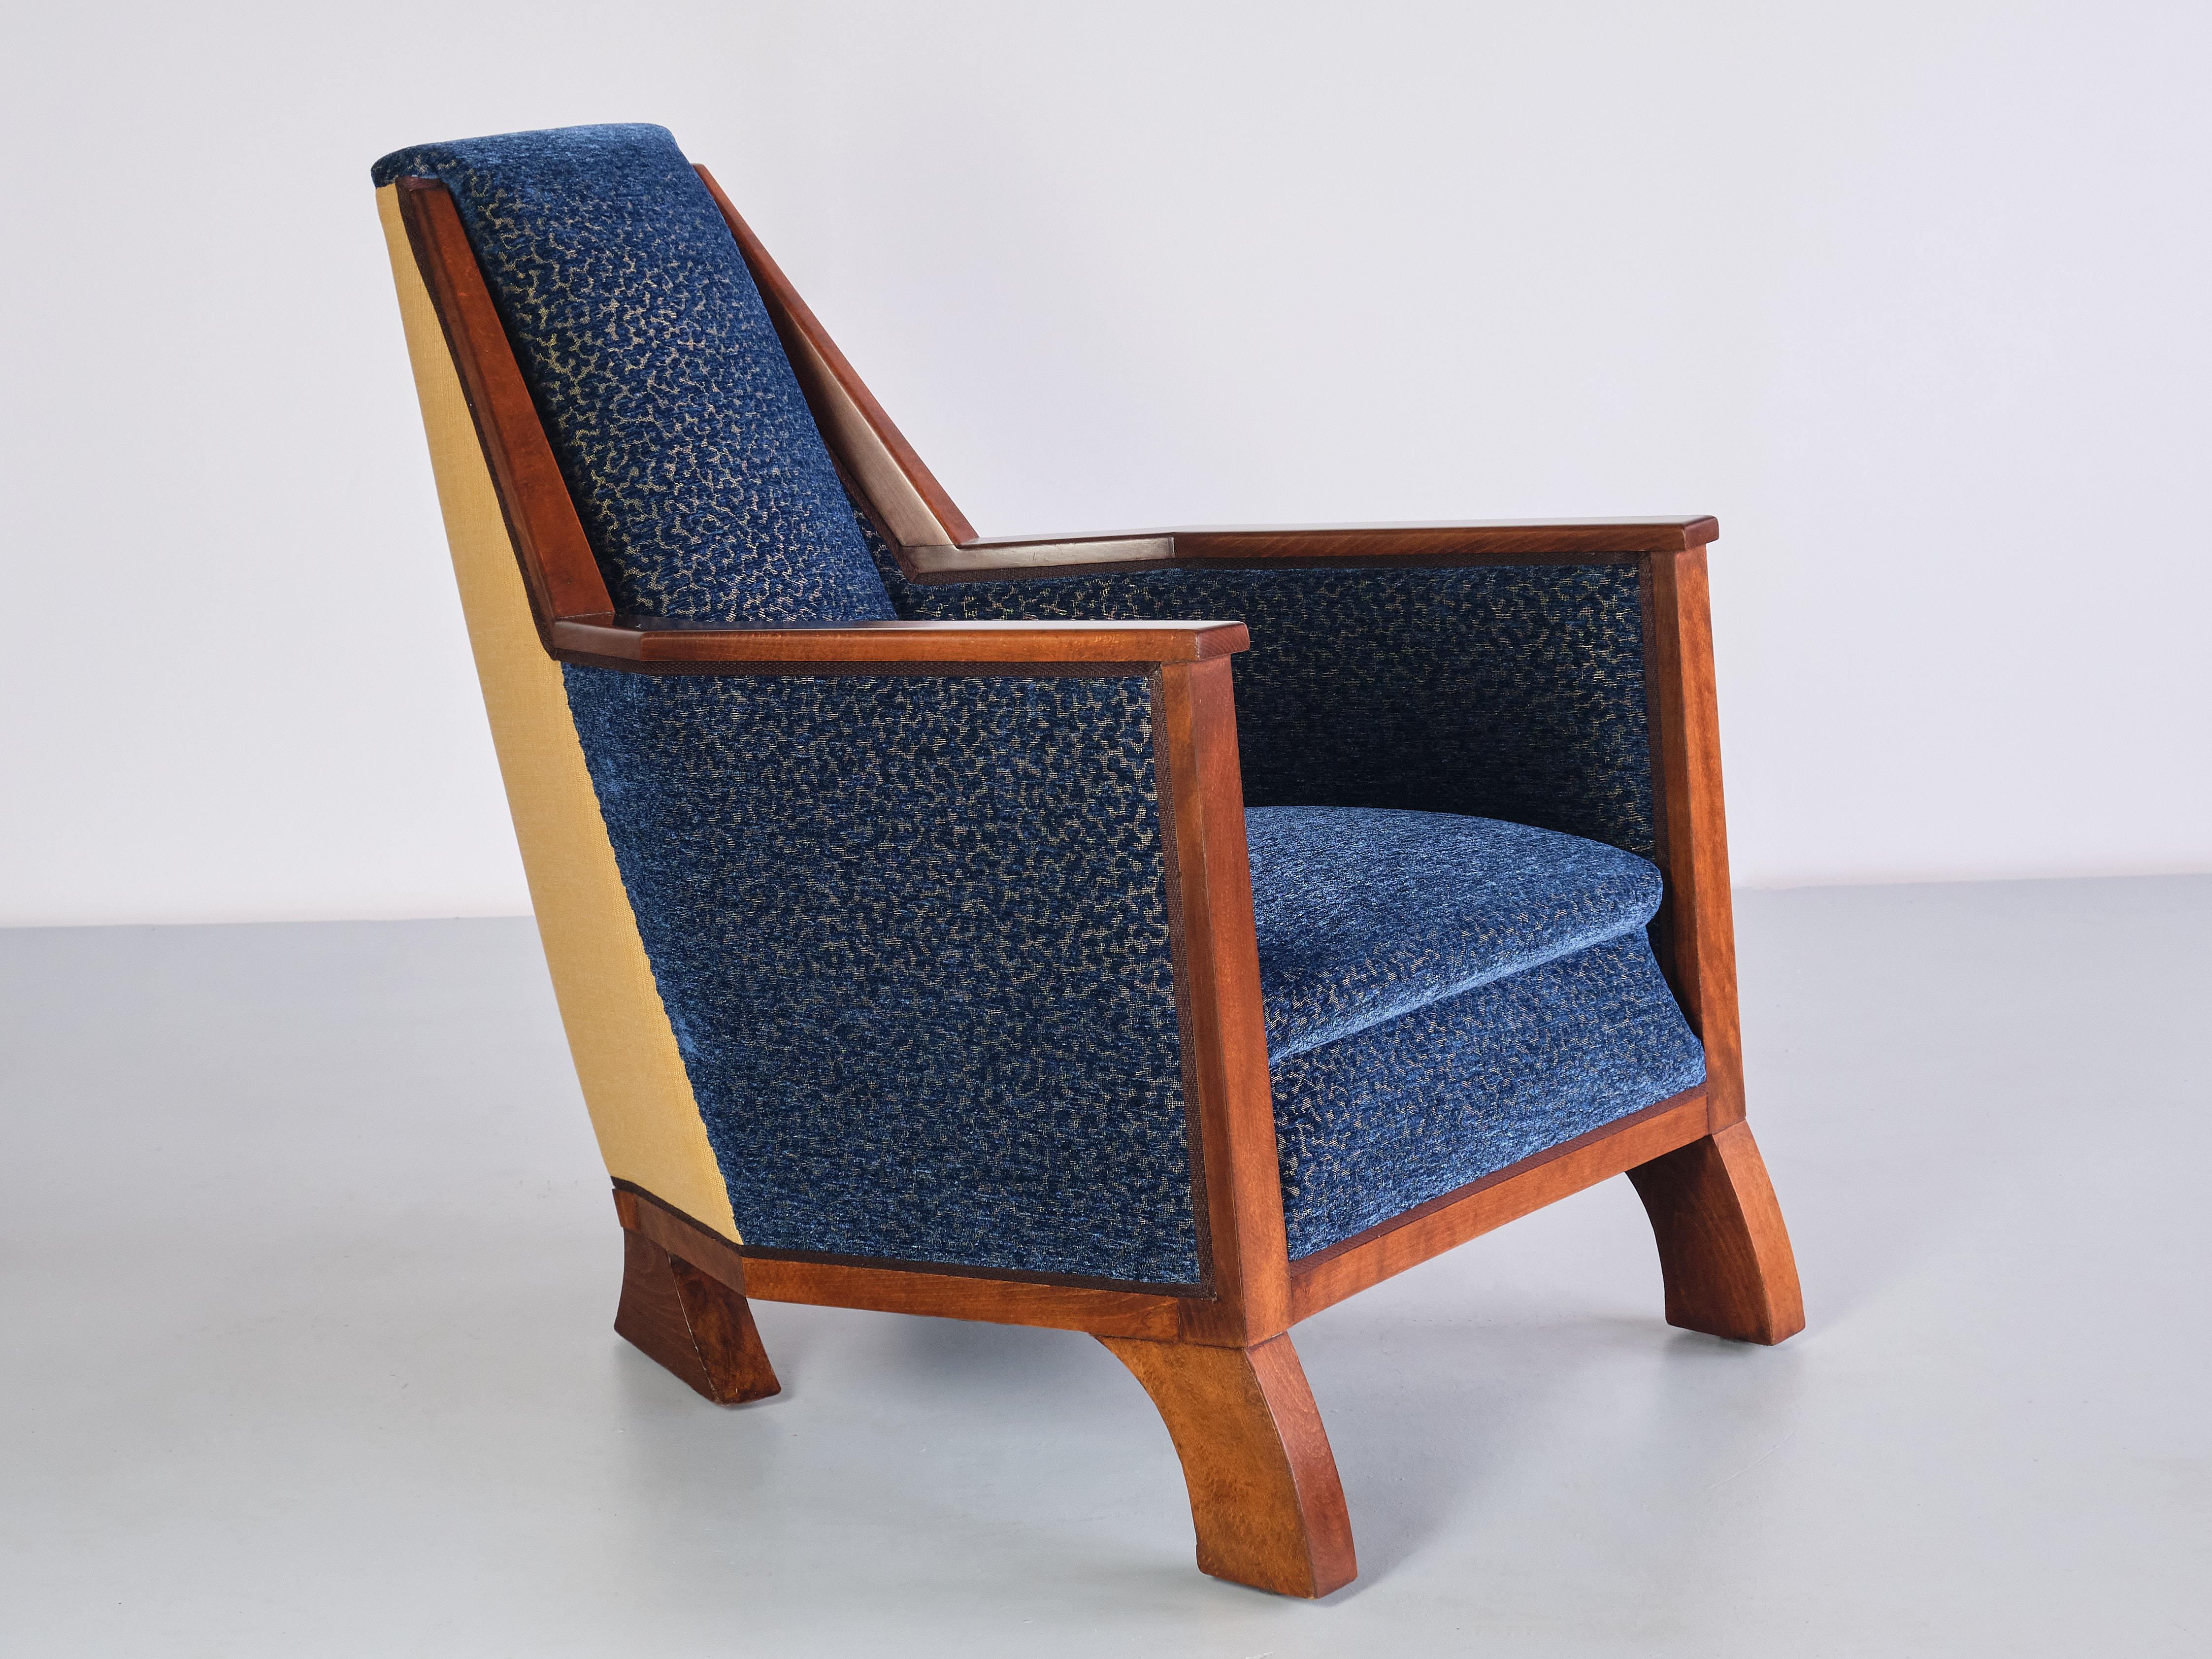 Ce fauteuil exceptionnel a été réalisé par un maître ébéniste du Nord de la France à la fin des années 1920. La chaise a été conçue pour une résidence privée de la région de Roubaix.

Les différents angles et formes de la chaise en font un design